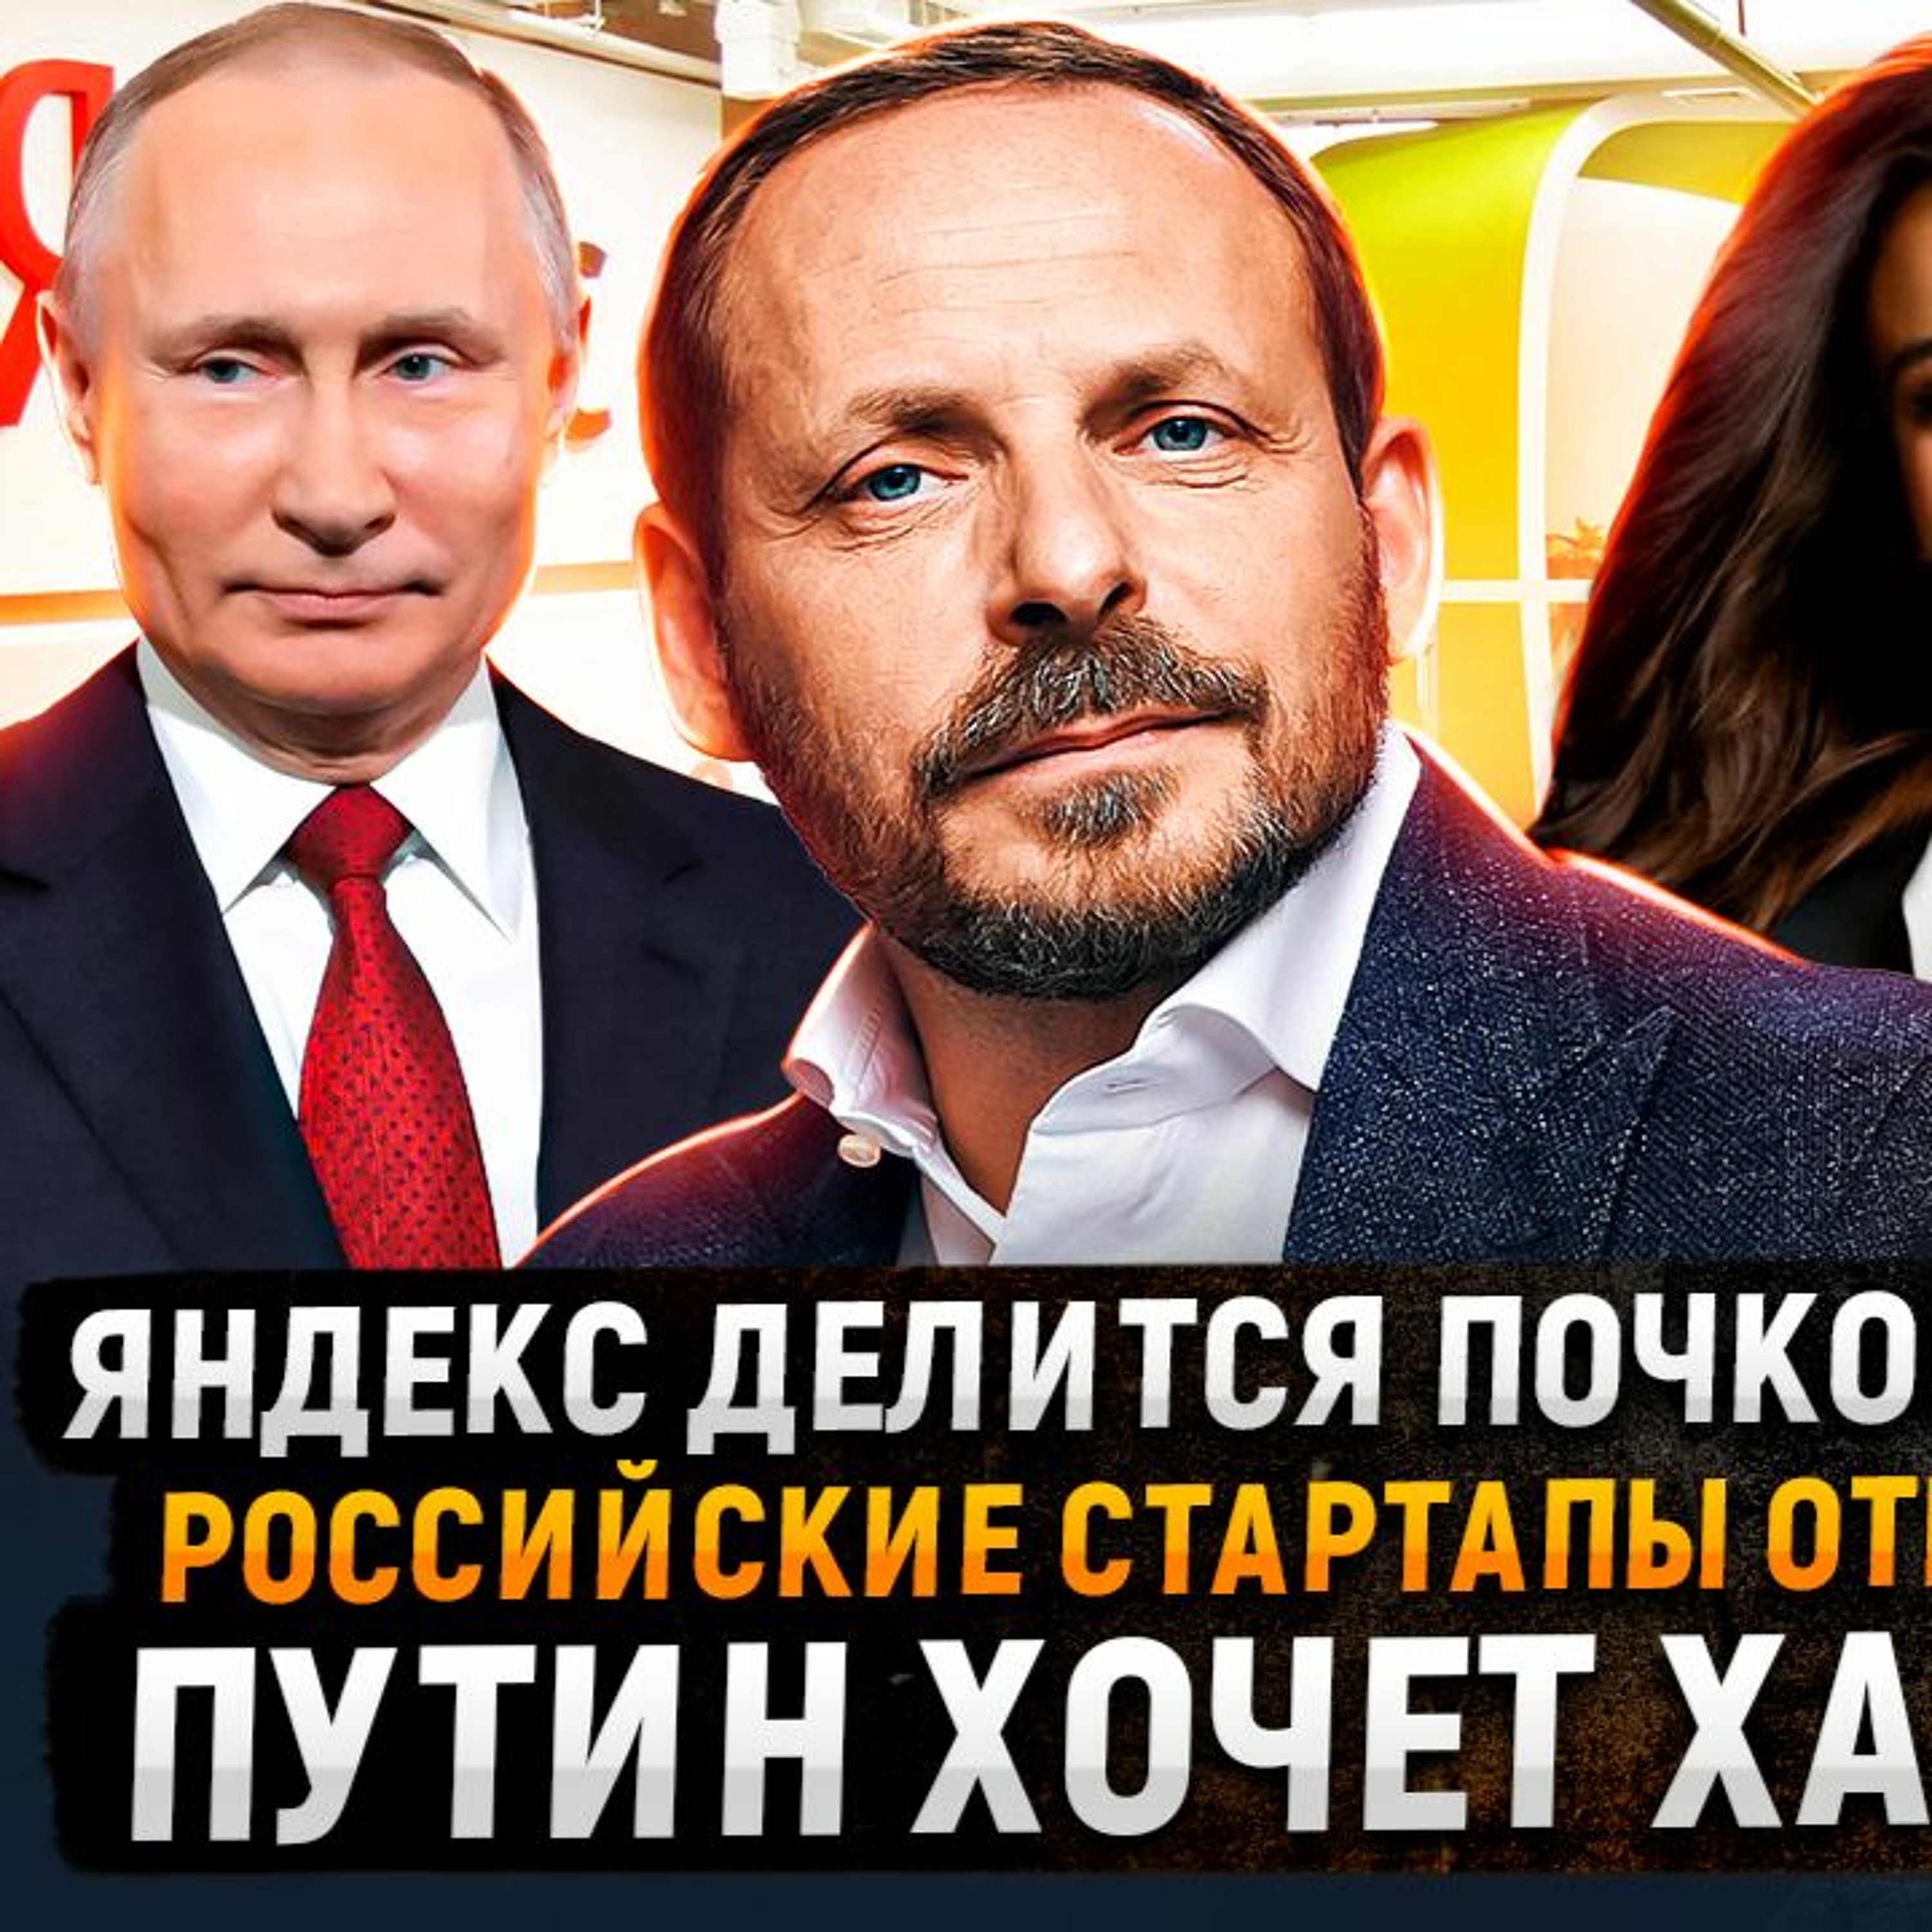 #75 - Яндекс делится почкованием / Российские стартапы отменяют / Путин хочет хавалу